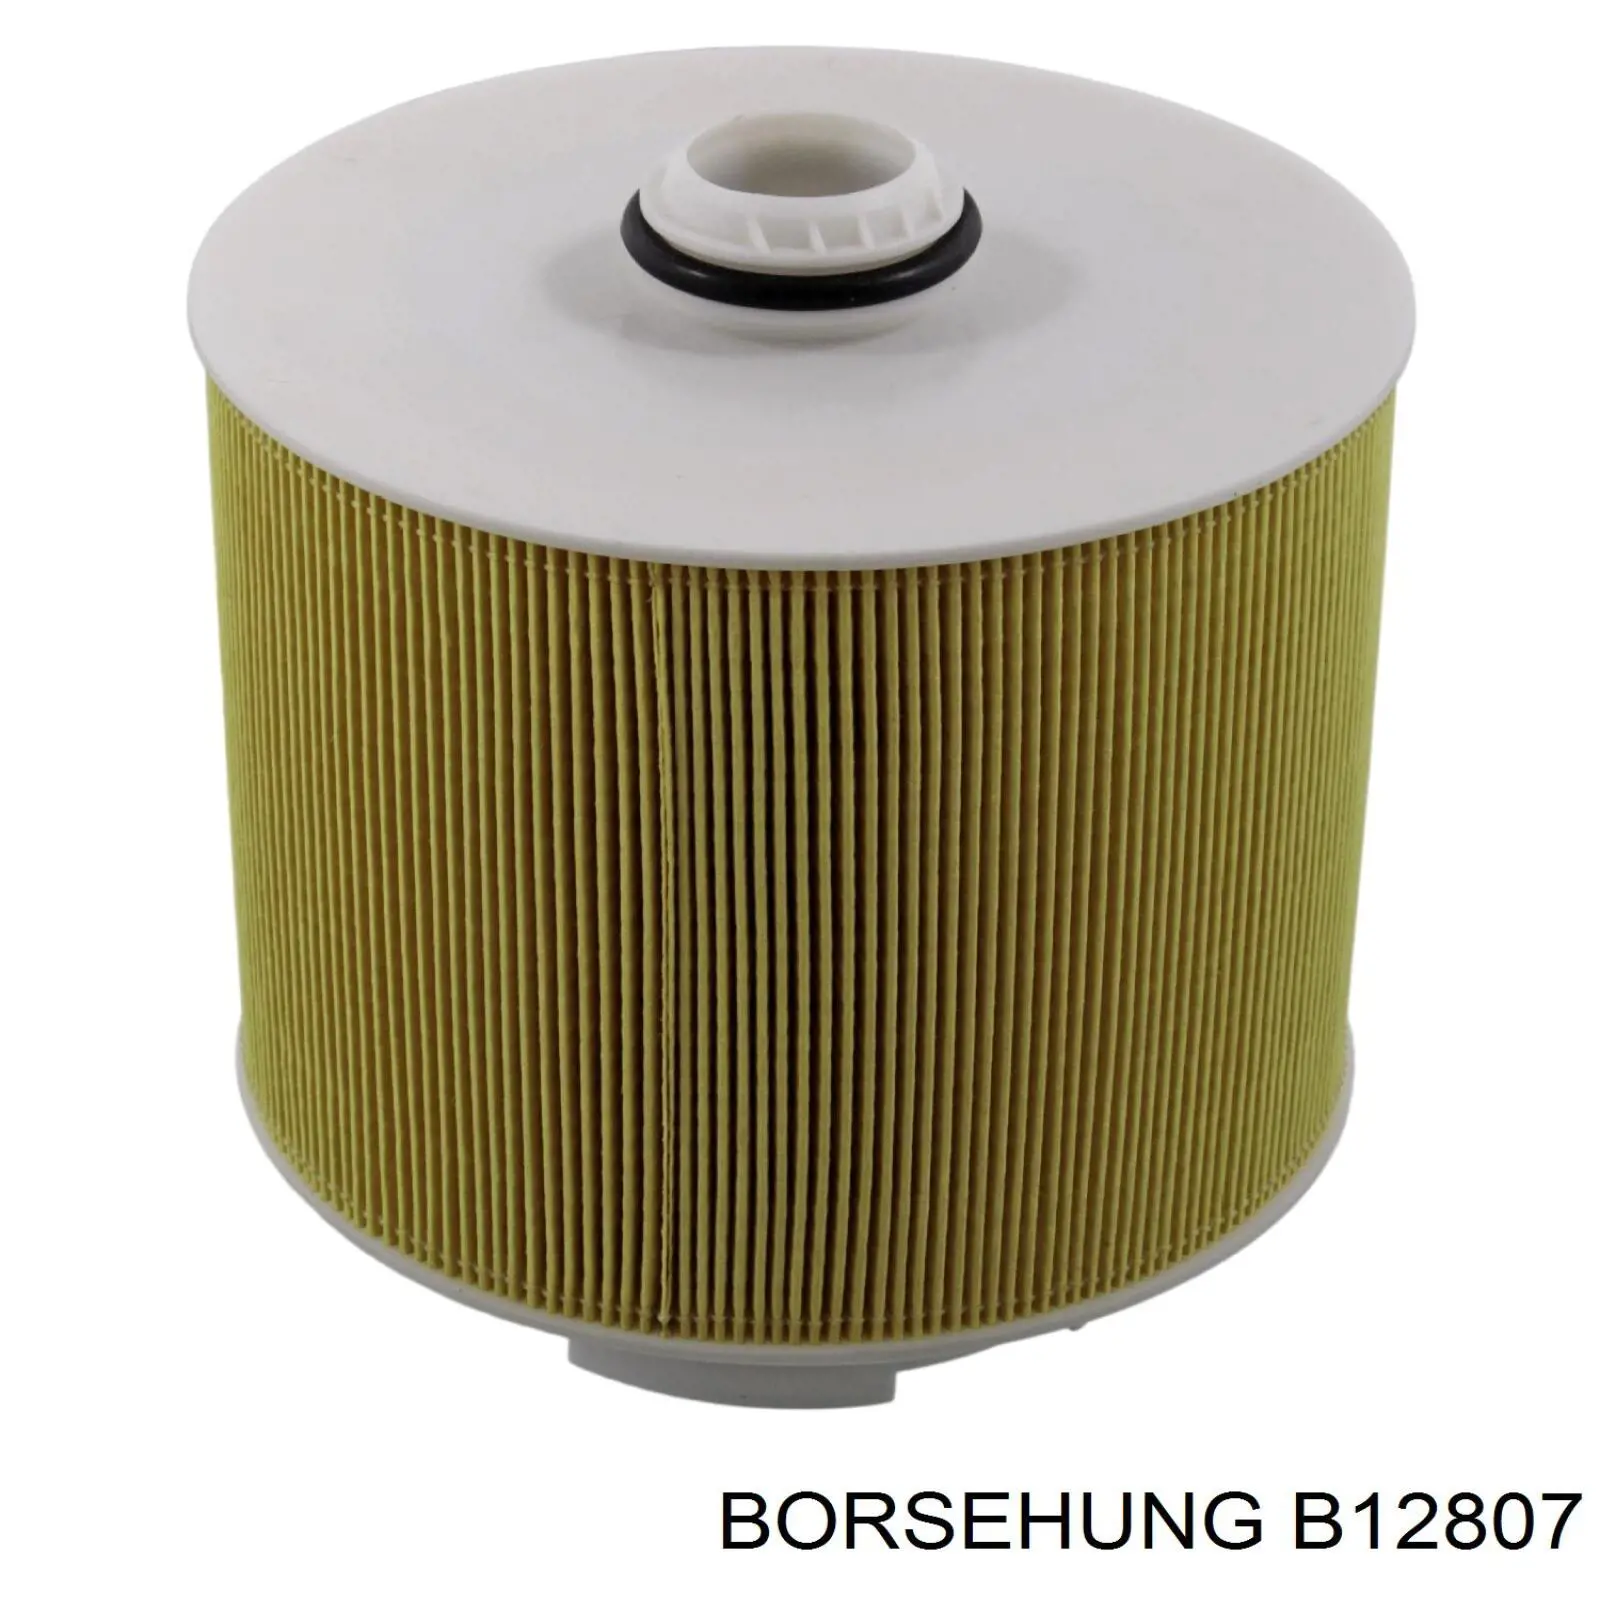 B12807 Borsehung filtro de aire